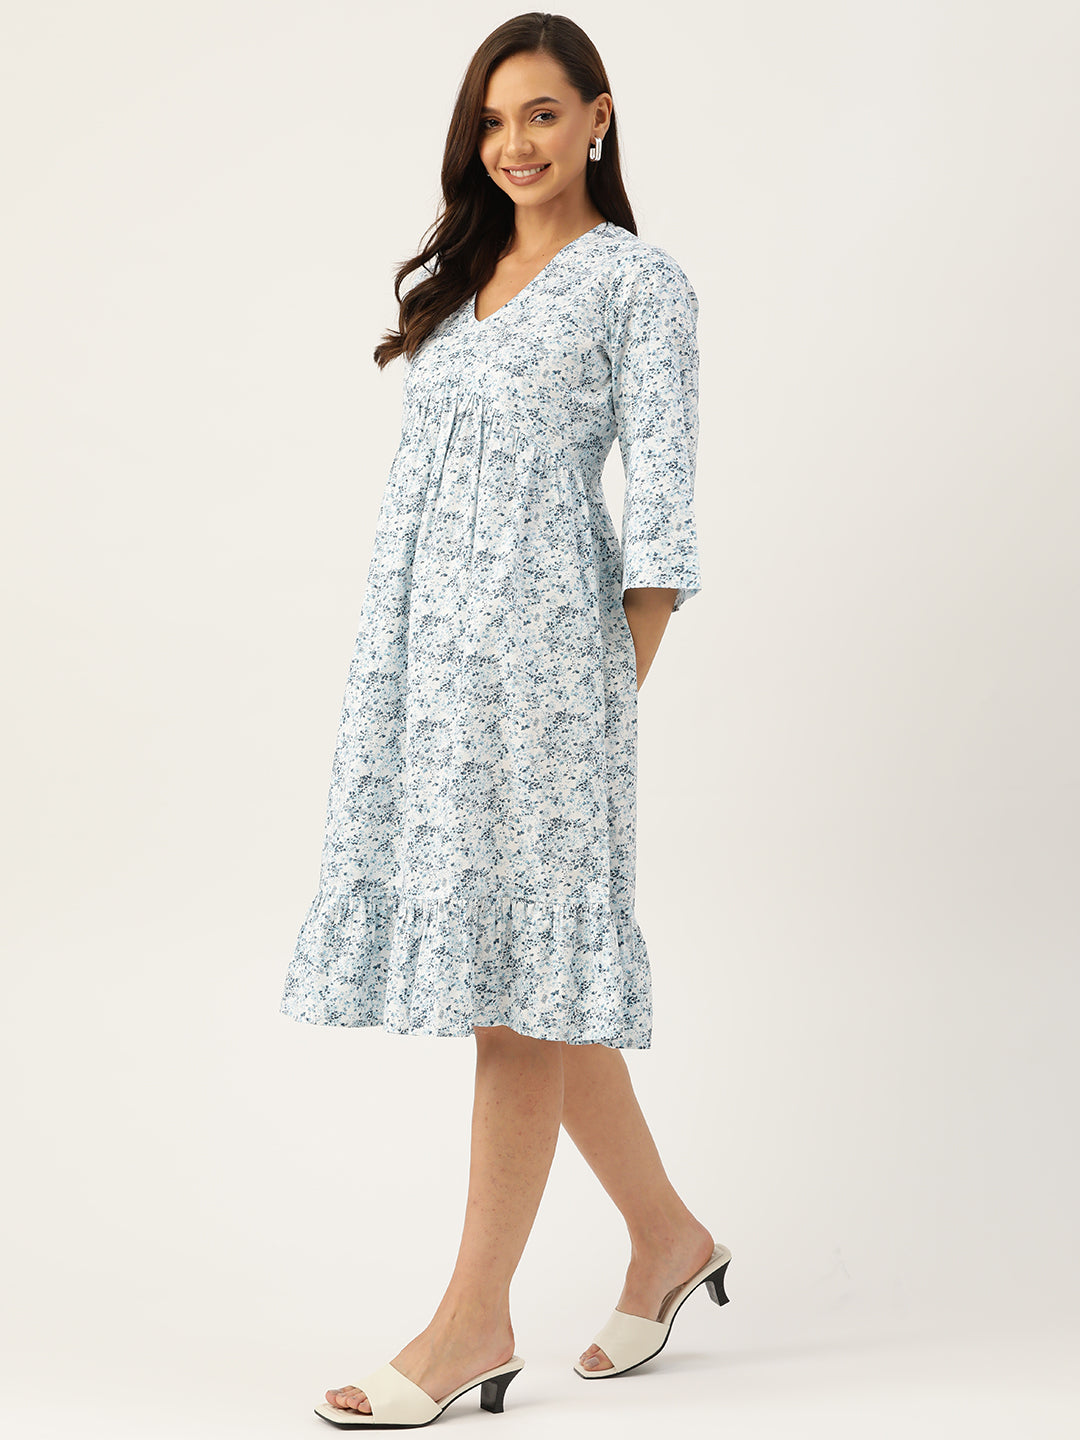 सफ़ेद और नीले रंग की फ्लोरल कॉटन A-लाइन ड्रेस